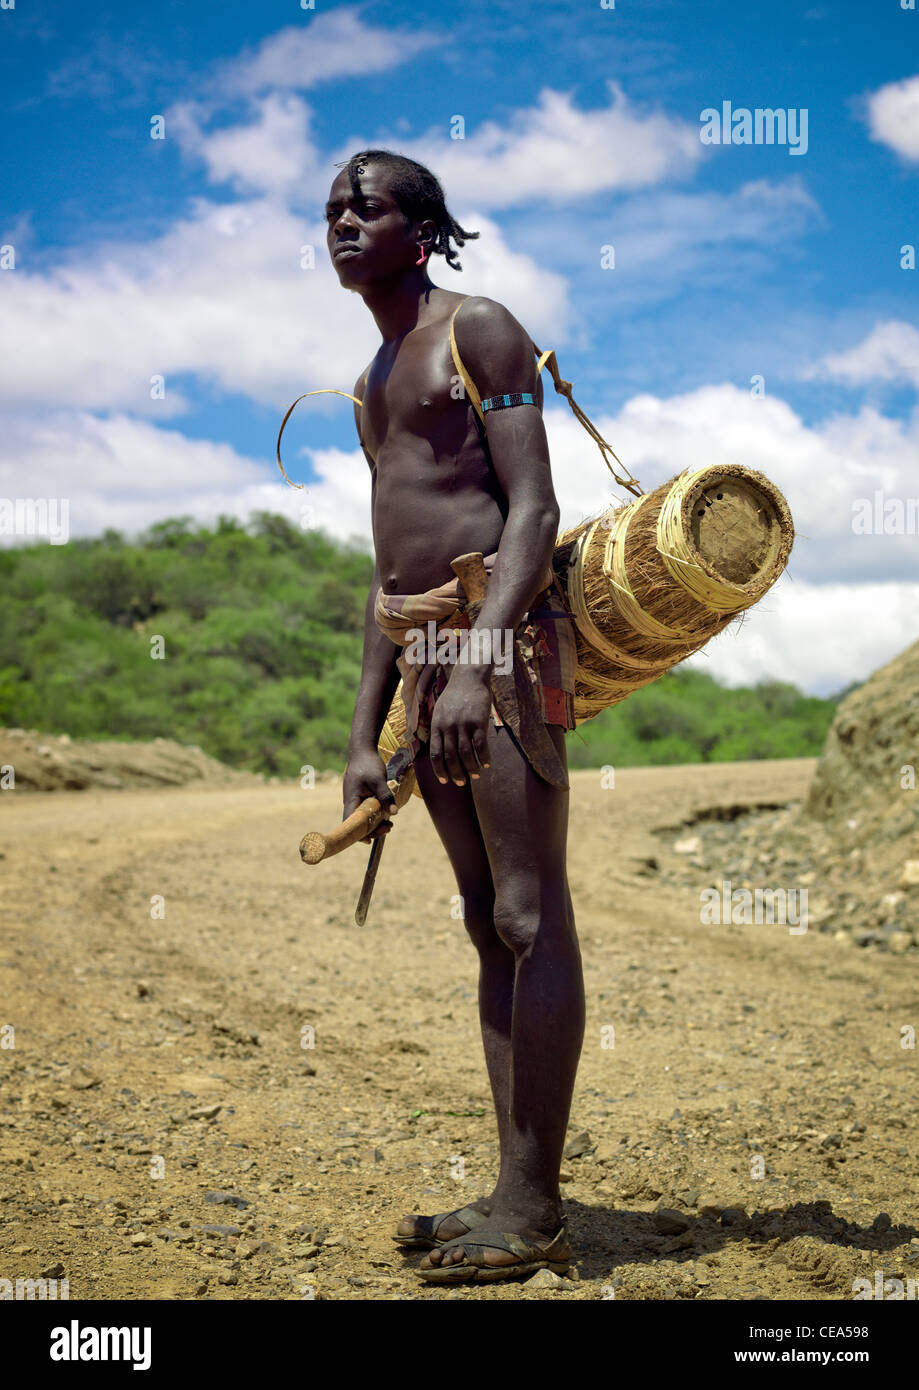 африканское племя голые член фото 93